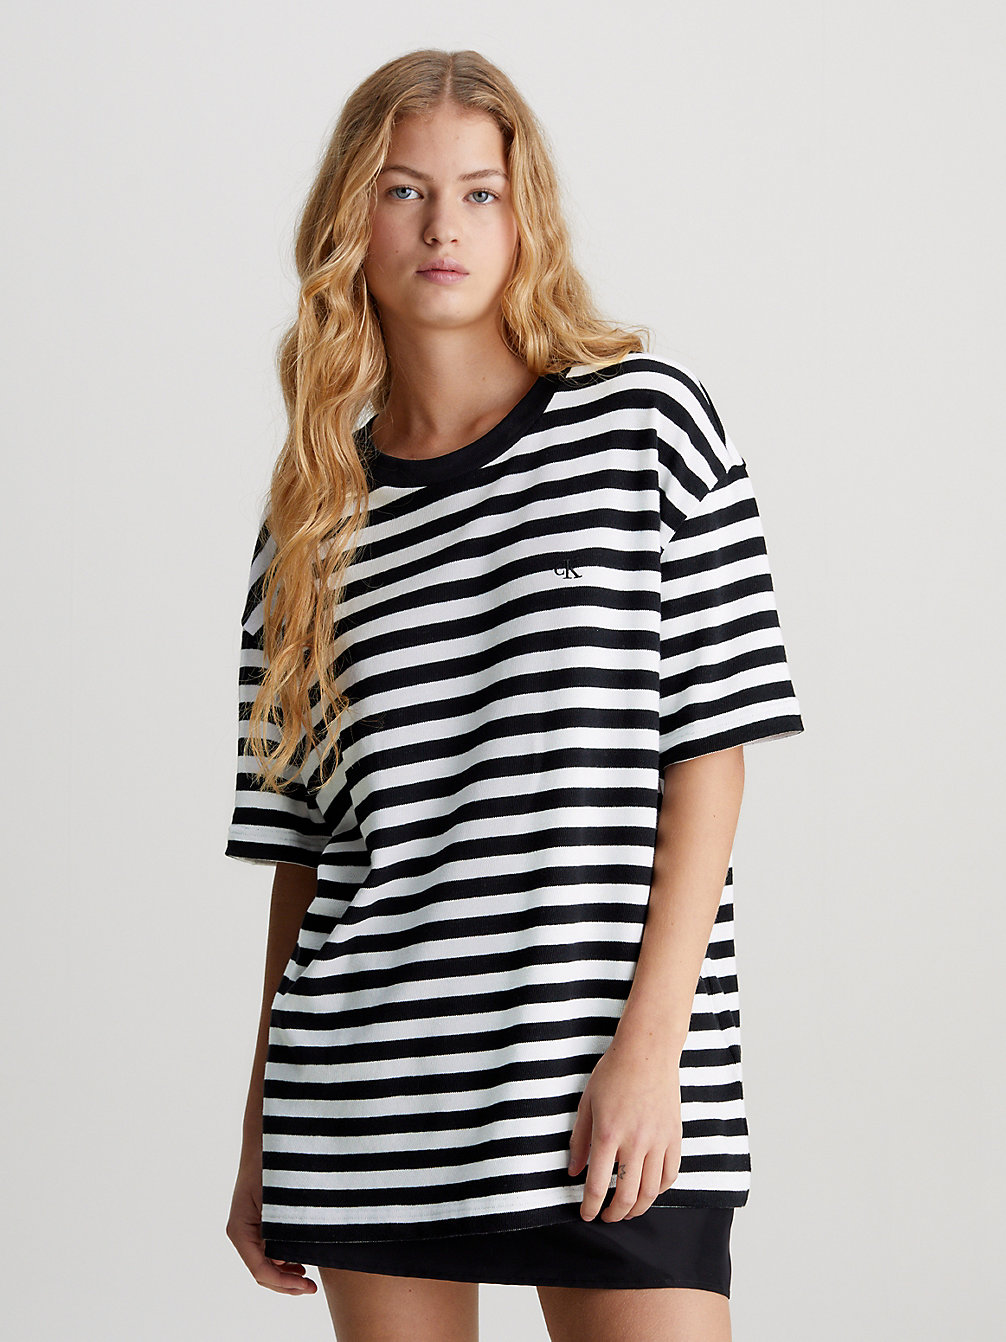 CK BLACK / WHISPER WHITE Unisex Oversized Striped T-Shirt undefined unisex Calvin Klein